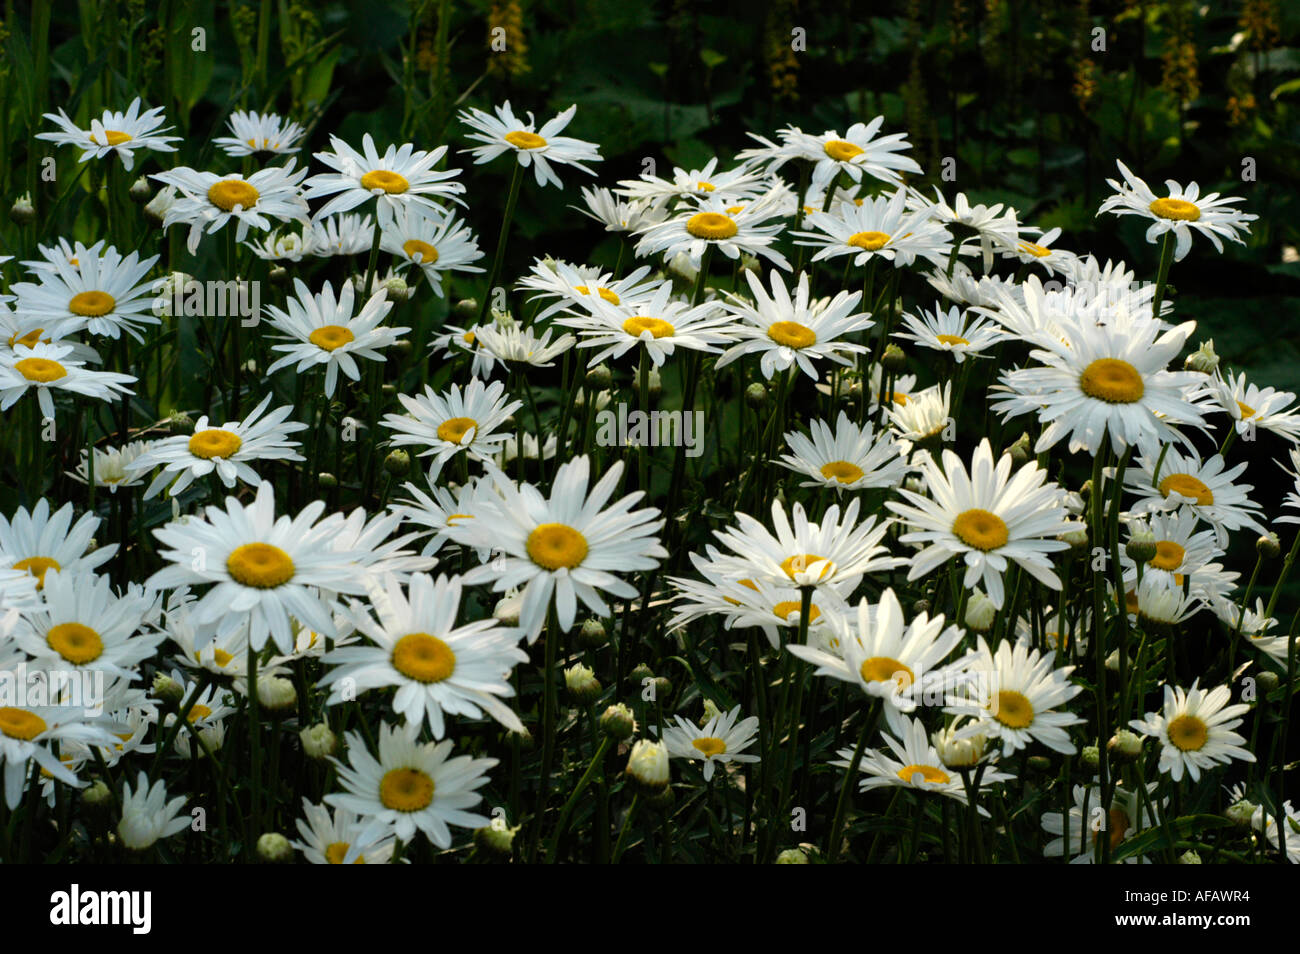 White flowers of max chrysanthemum or Chrysanthemum maximum or Shasta daisy Compositae Leucanthemum maximum Europe Stock Photo